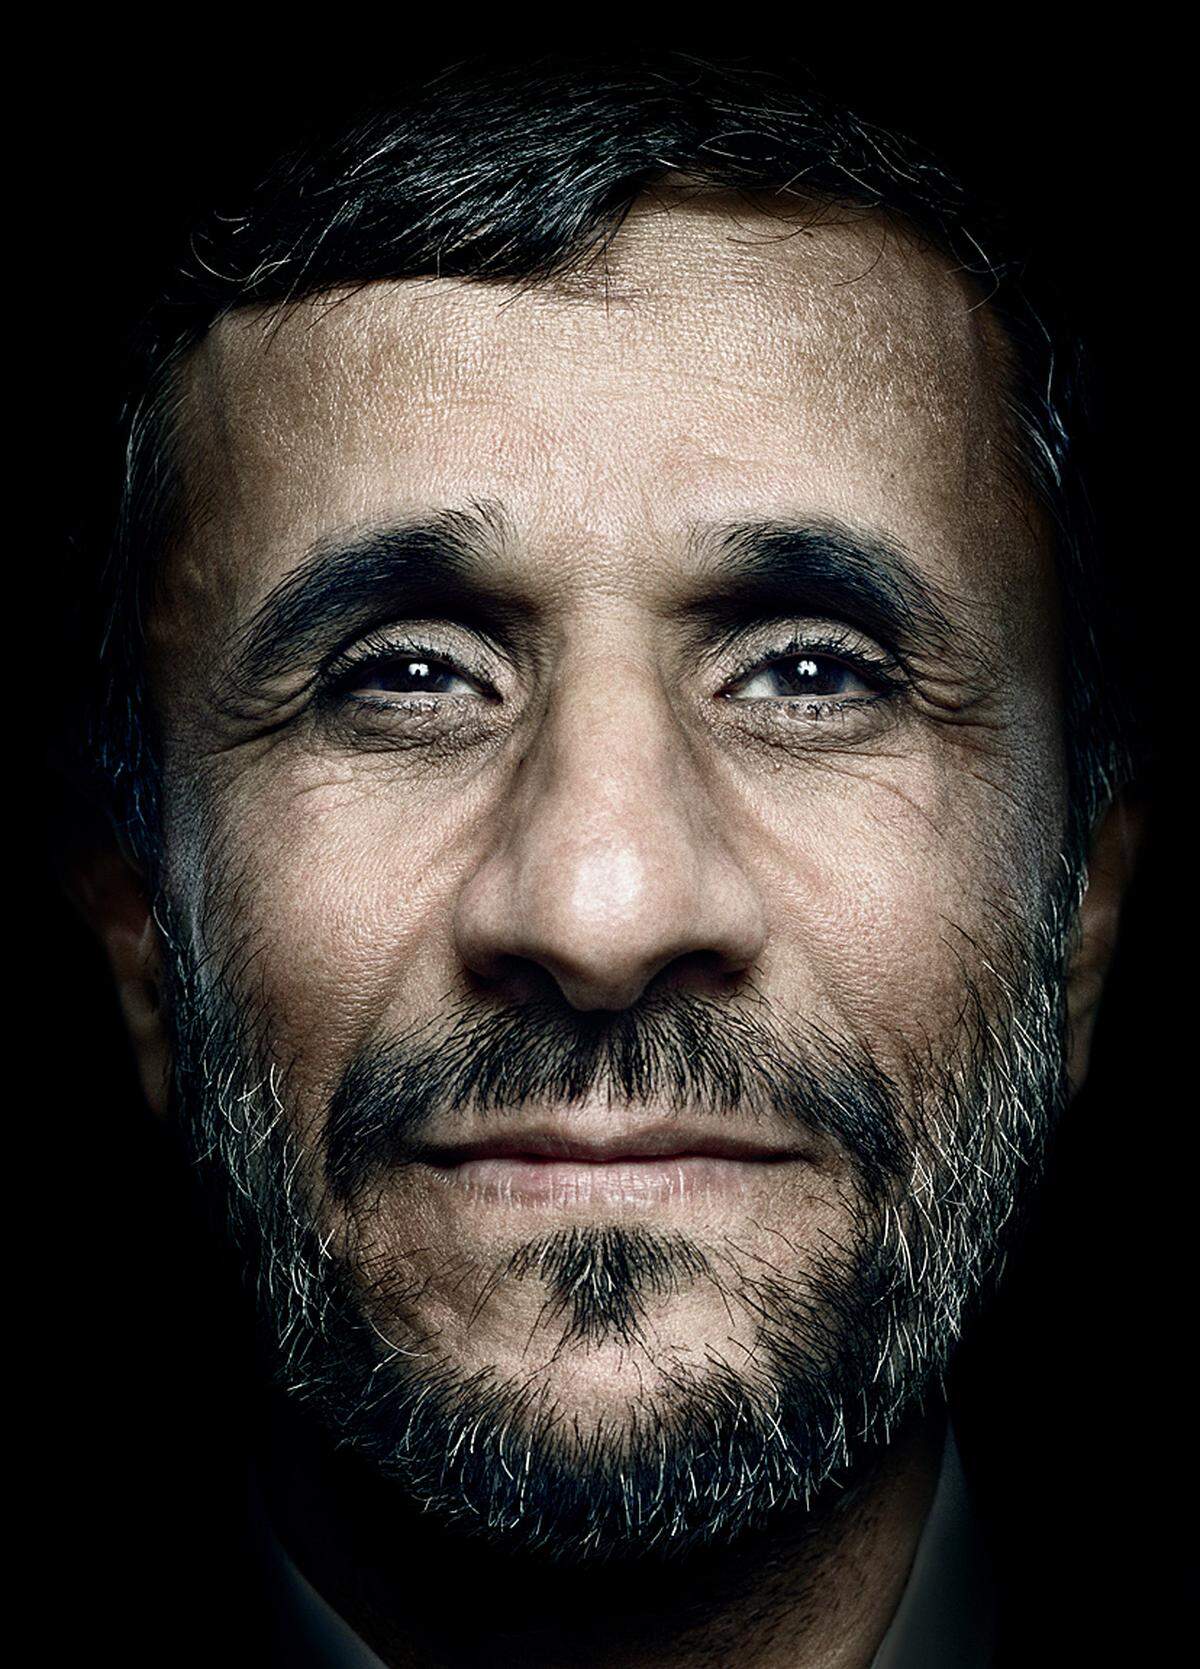 Im Auftrag des New Yorker schuf der Fotograf Platon Antoniou im September 2009, während der Hauptversammlung der Vereinten Nationen in New York, eine einzigartige Porträtreihe: In nur fünf Tagen fotografierte er in seinem improvisierten Studio im UNO-Gebäude am East River mehr als hundert Staats- und Regierungschefs. Im Bild: Mahmoud Ahmadinejad, Präsident des Iran, im Amt seit August 2005. (c) Platon